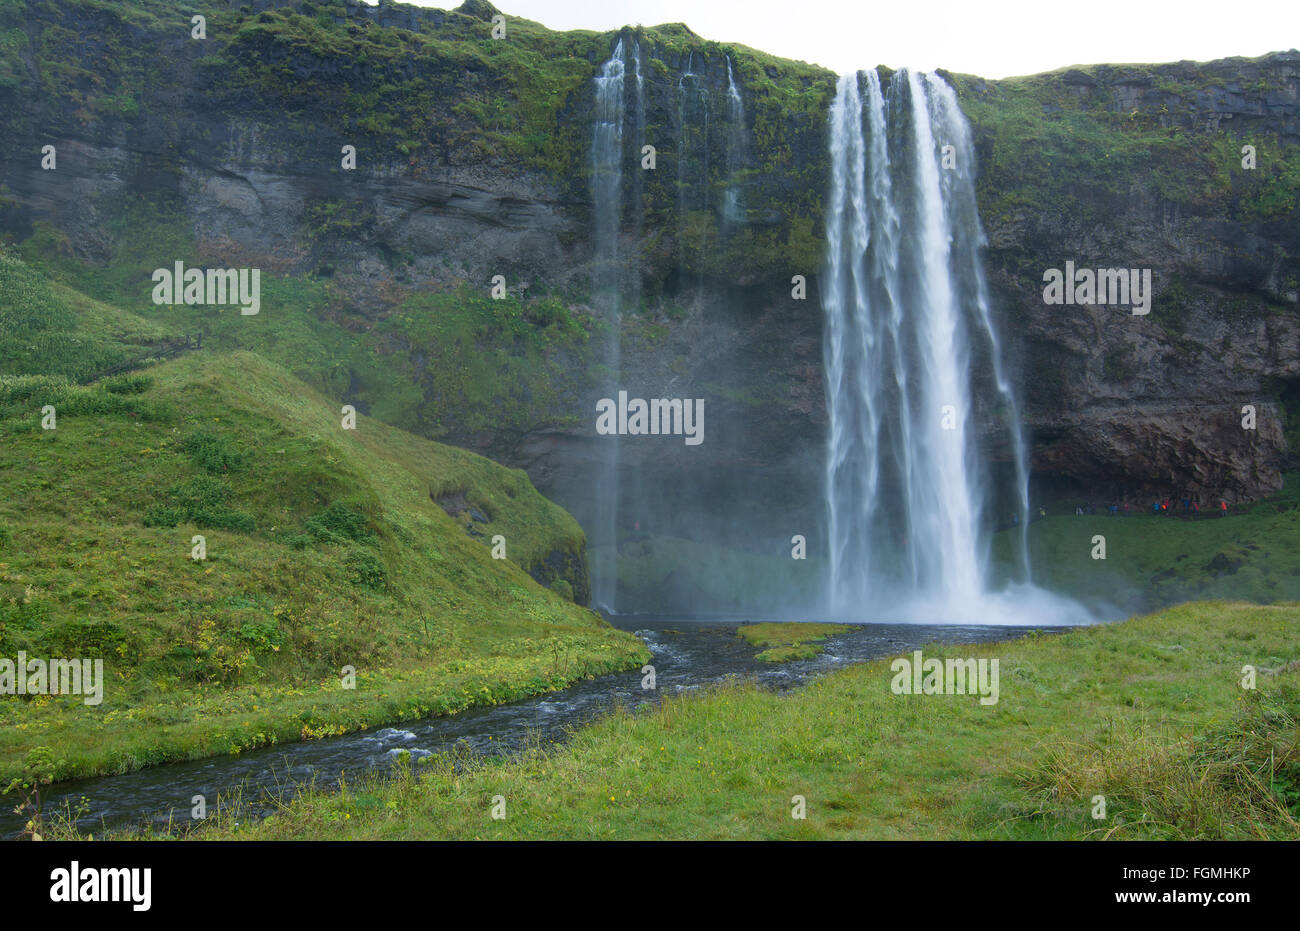 Chutes d'eau de Seljalandsfoss Islande célèbre tombe dans le sud de l'Islande avec 180 pieds ou 60 mètres de chute d'eau Banque D'Images